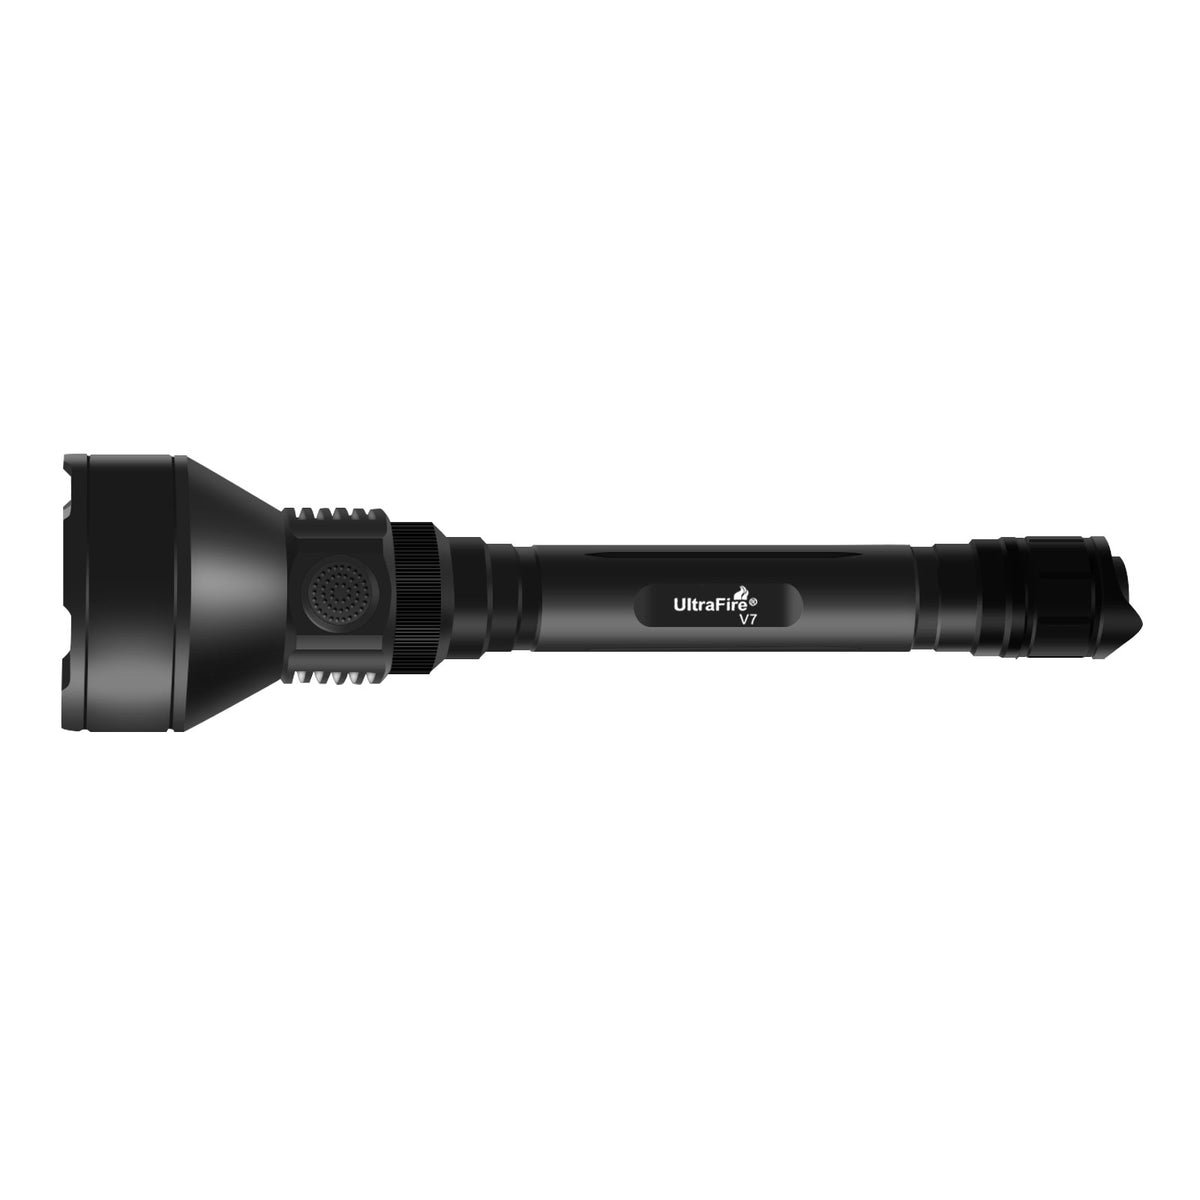 UltraFire V7 Tactical Flashlight